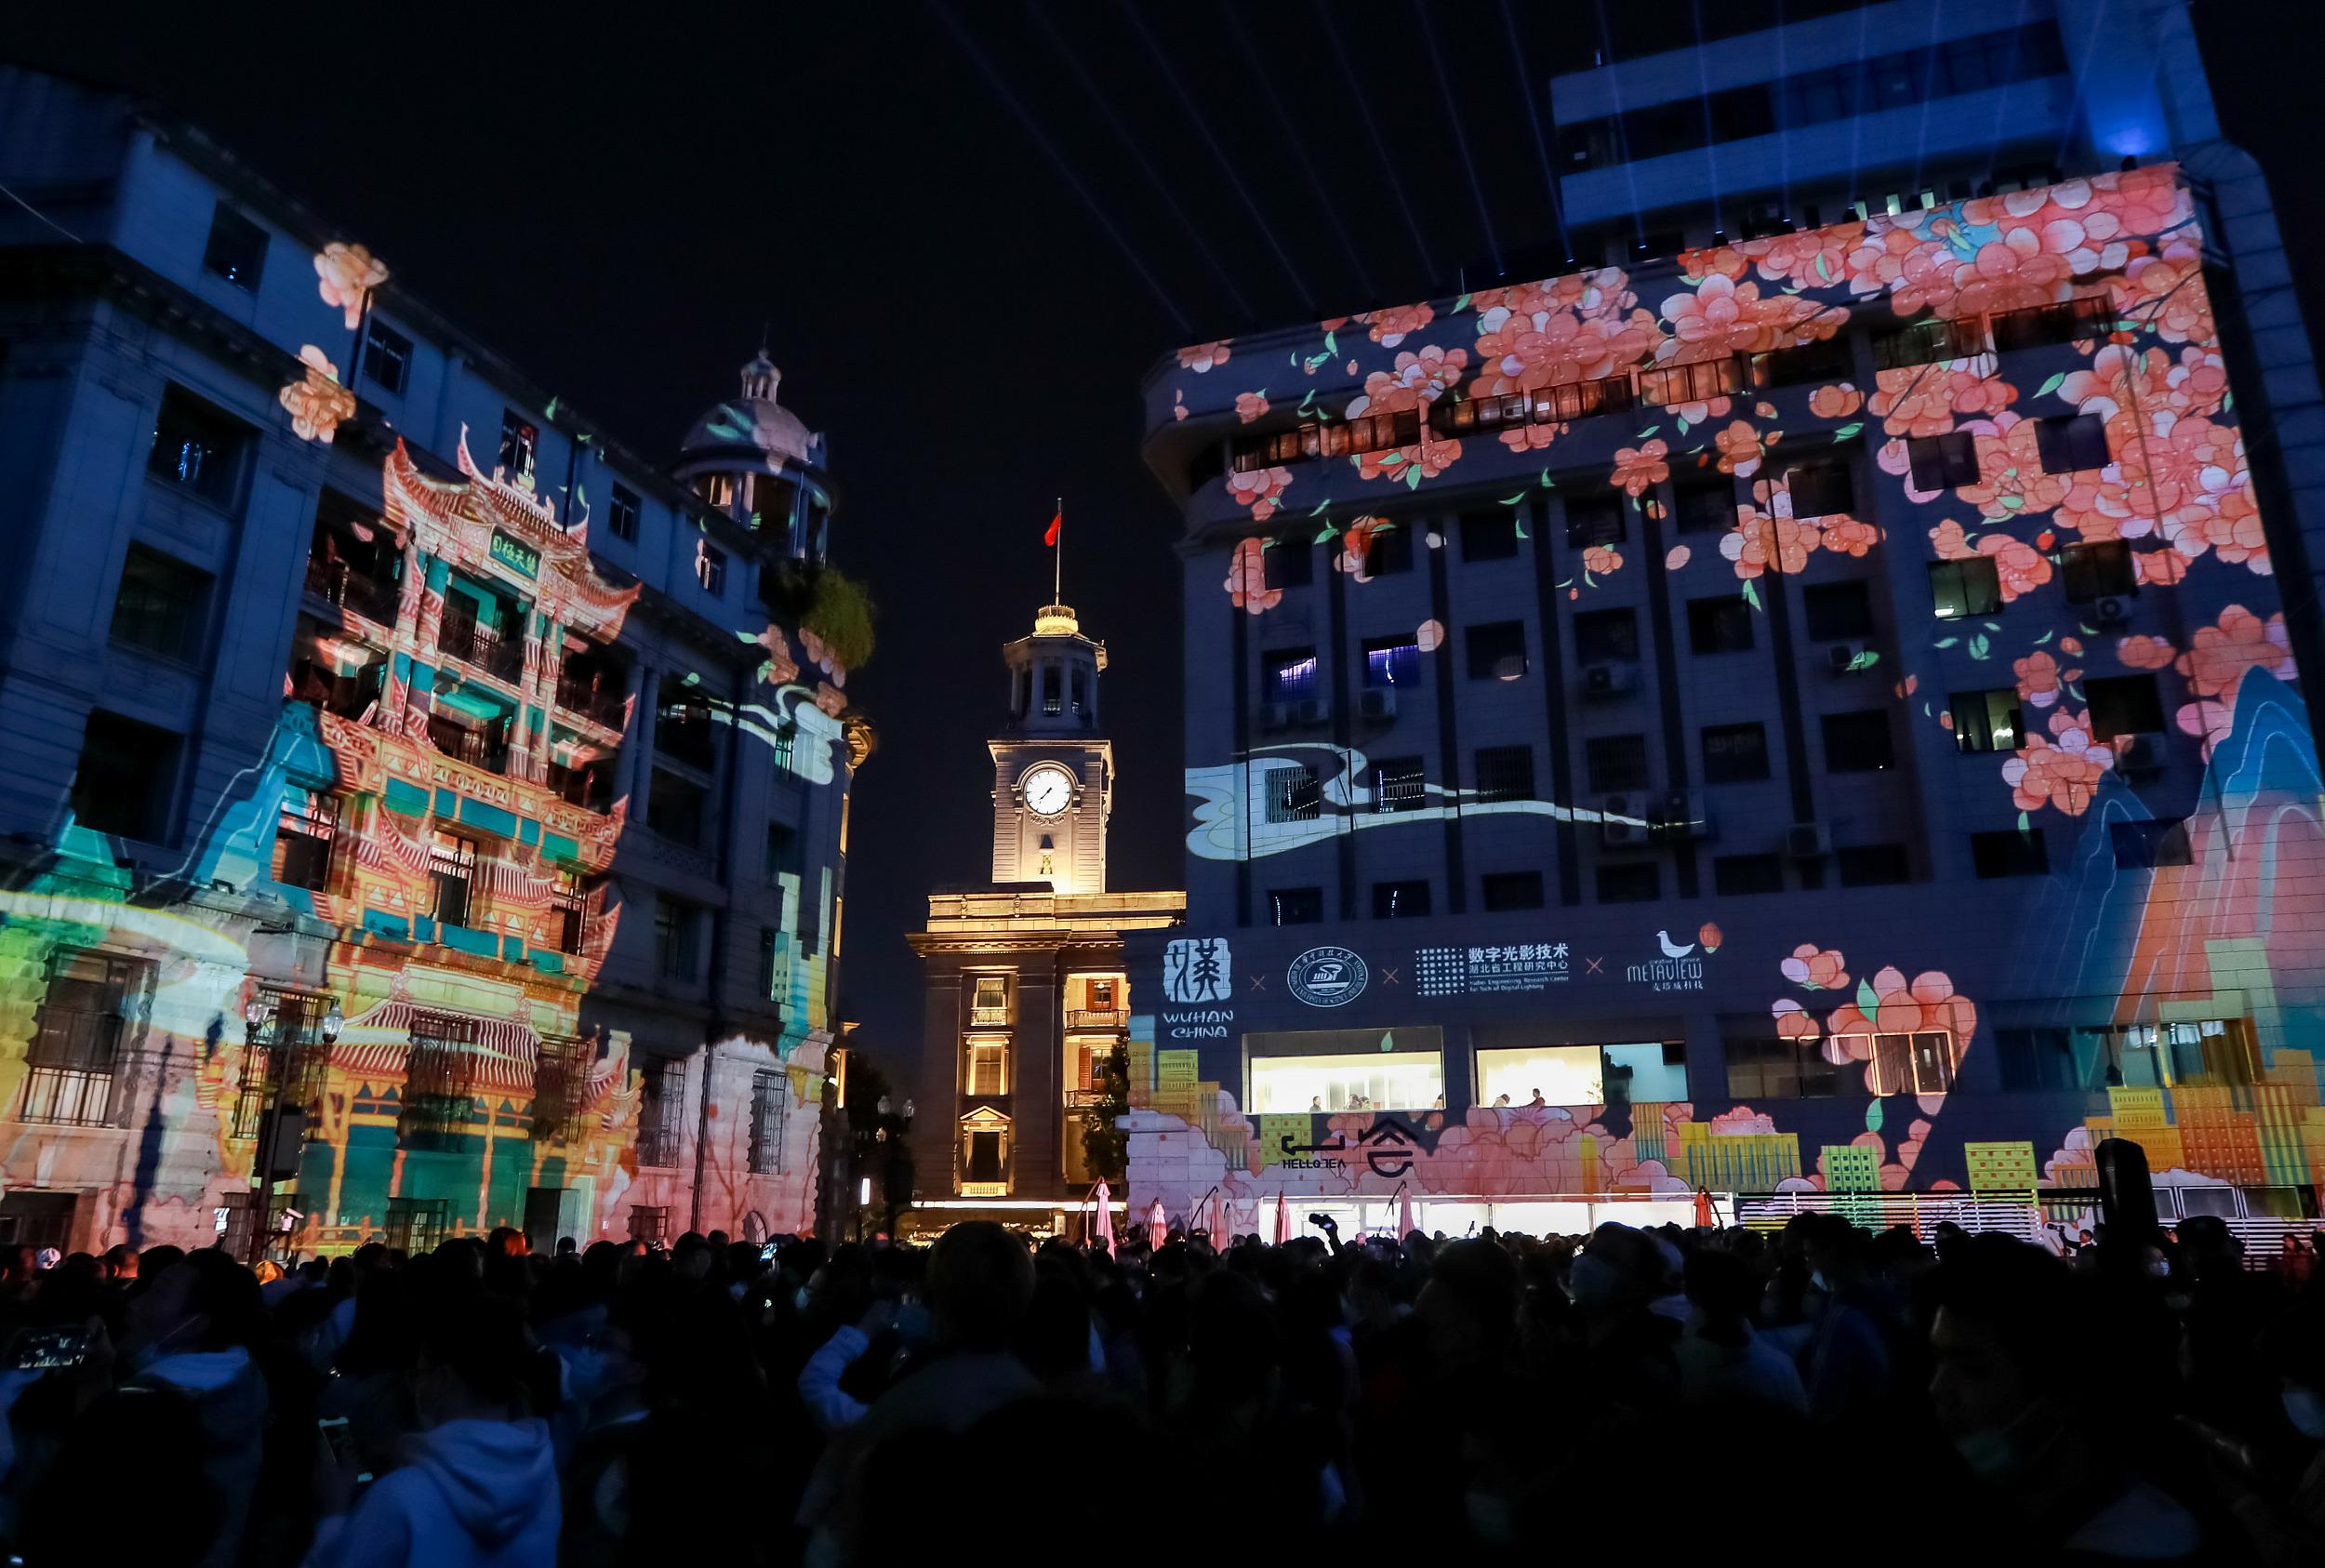 武漢市江漢路歩行者天国で22日に上演された桜のプロジェクションマッピング（写真著作権はCFP視覚中国が所有のため転載禁止）。 